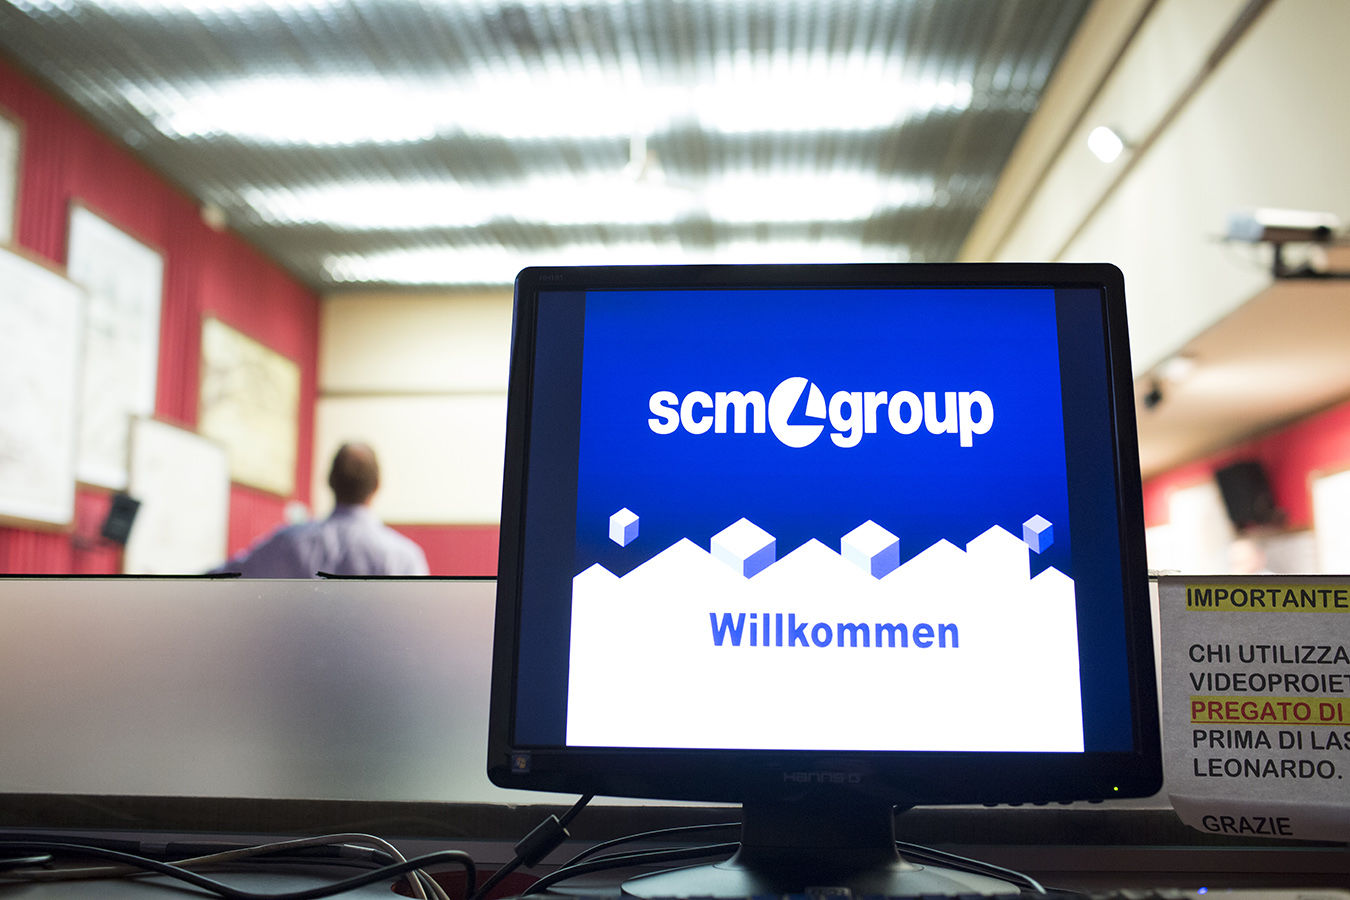 Delegazione tedesca in visita @ Scm Group HQ